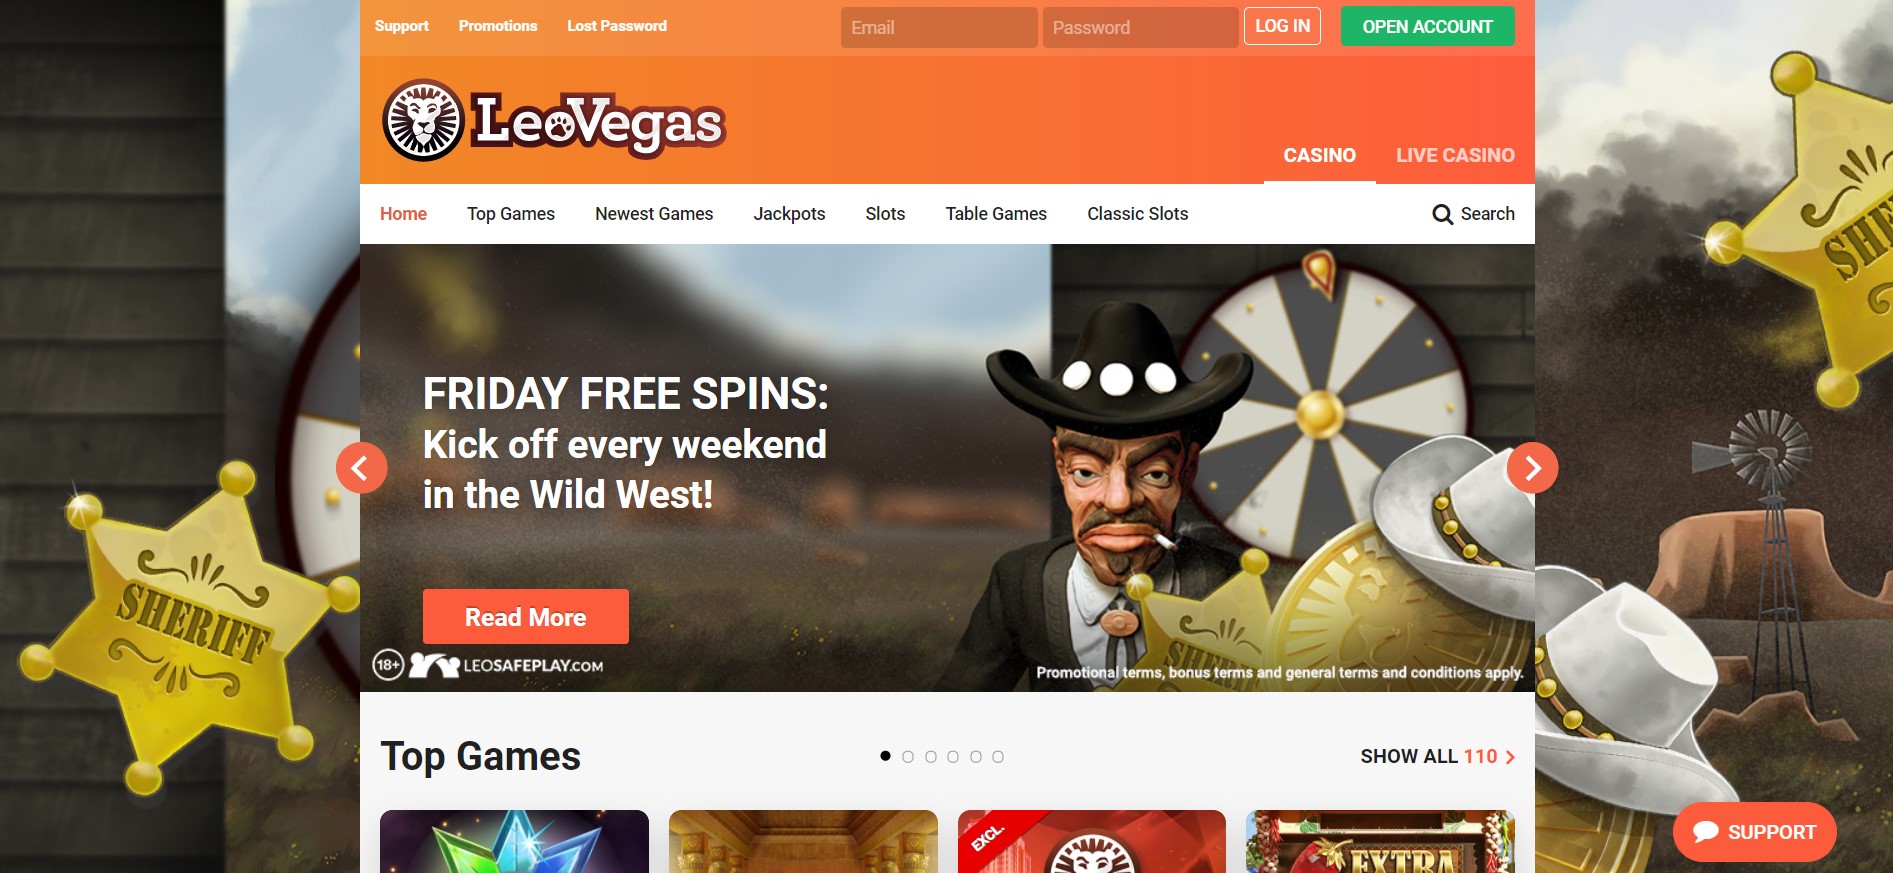 LeoVegas Casino login